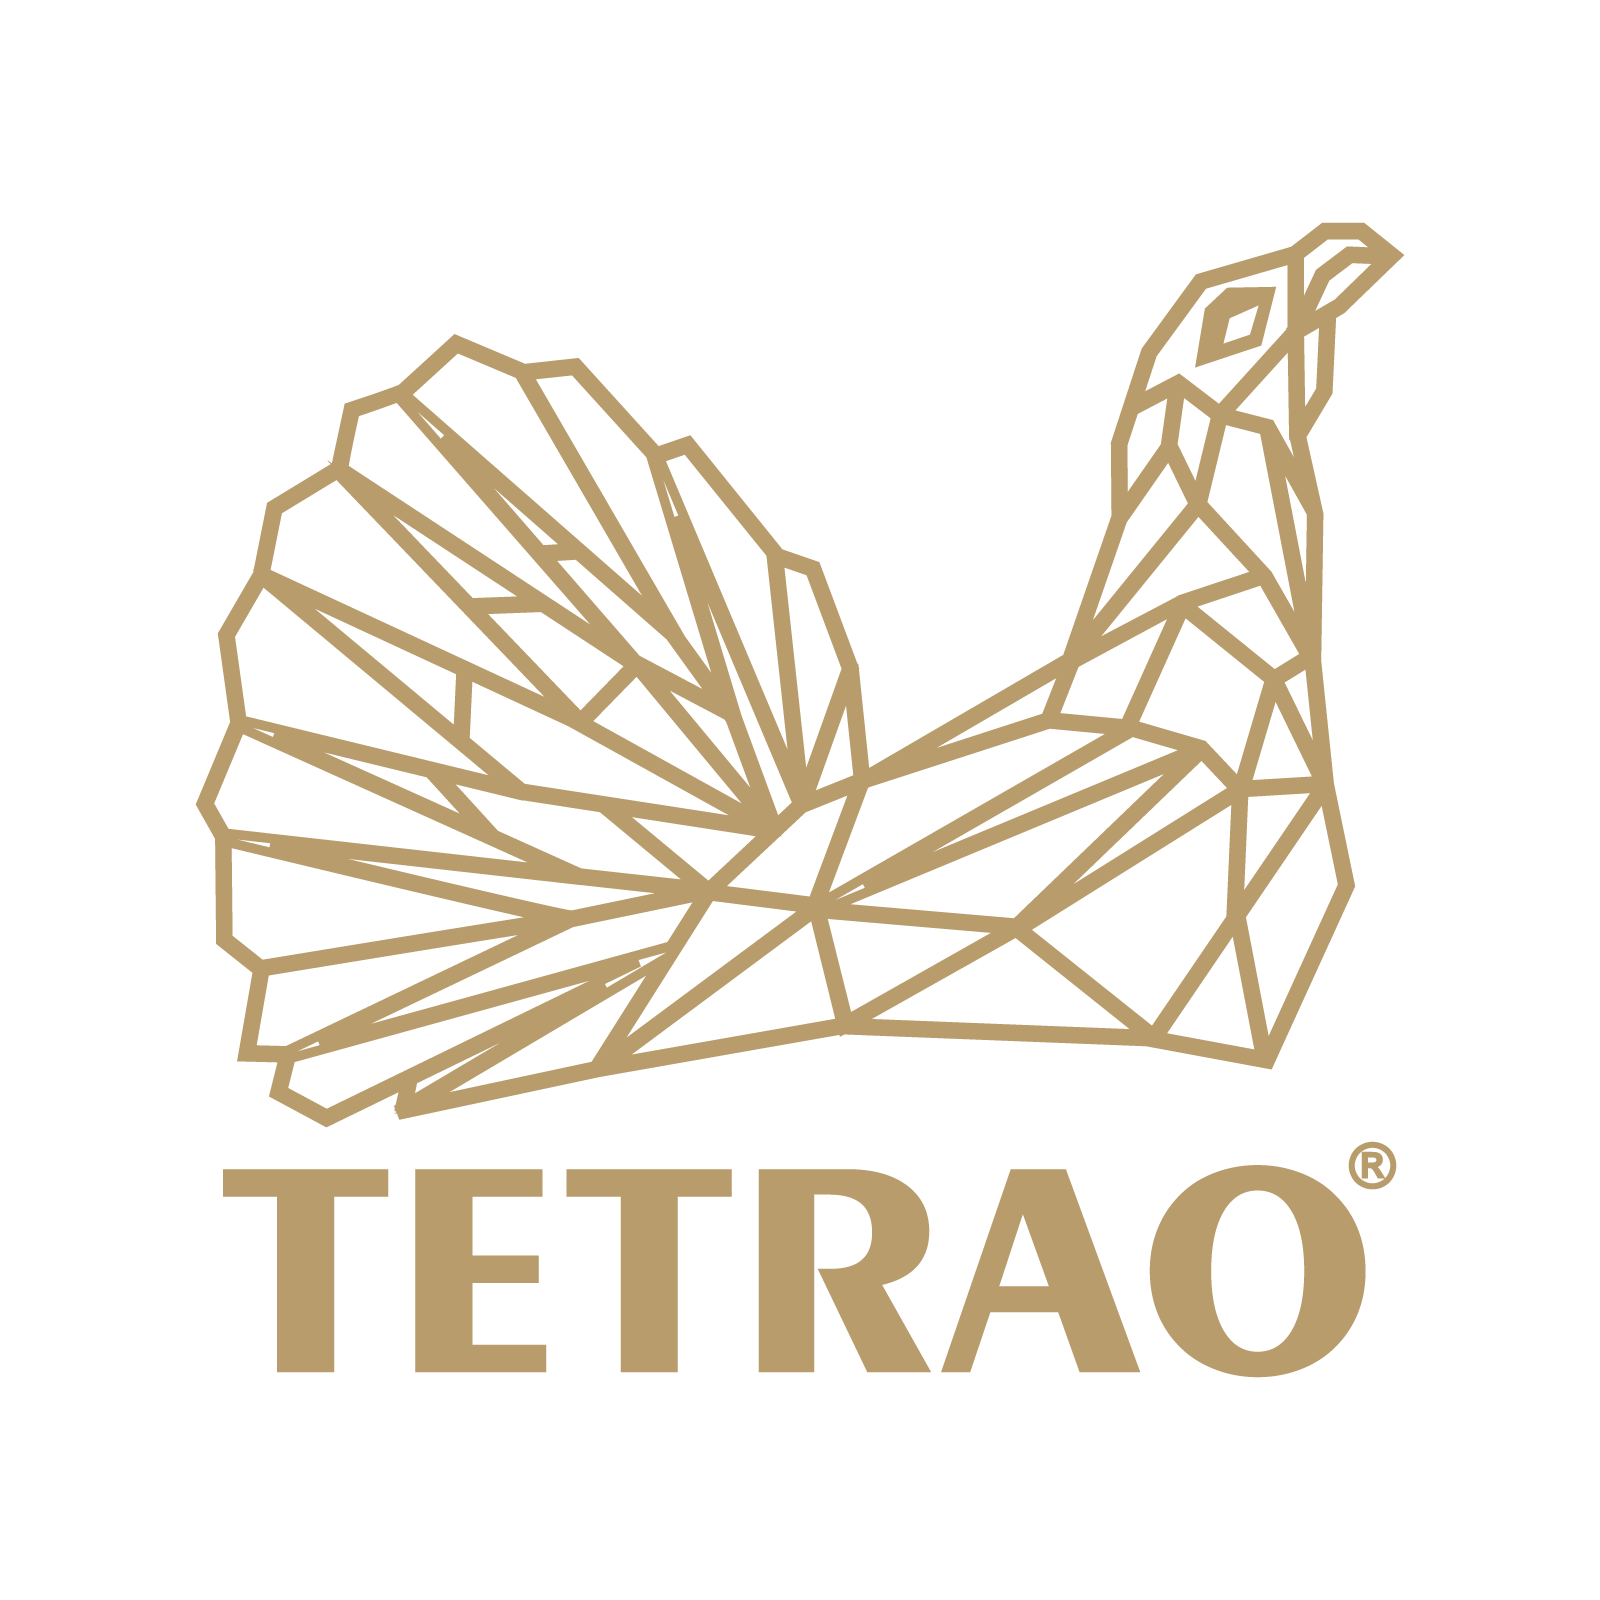 TETRAO - príbeh značky so šľachetným úmyslom | IBO.sk